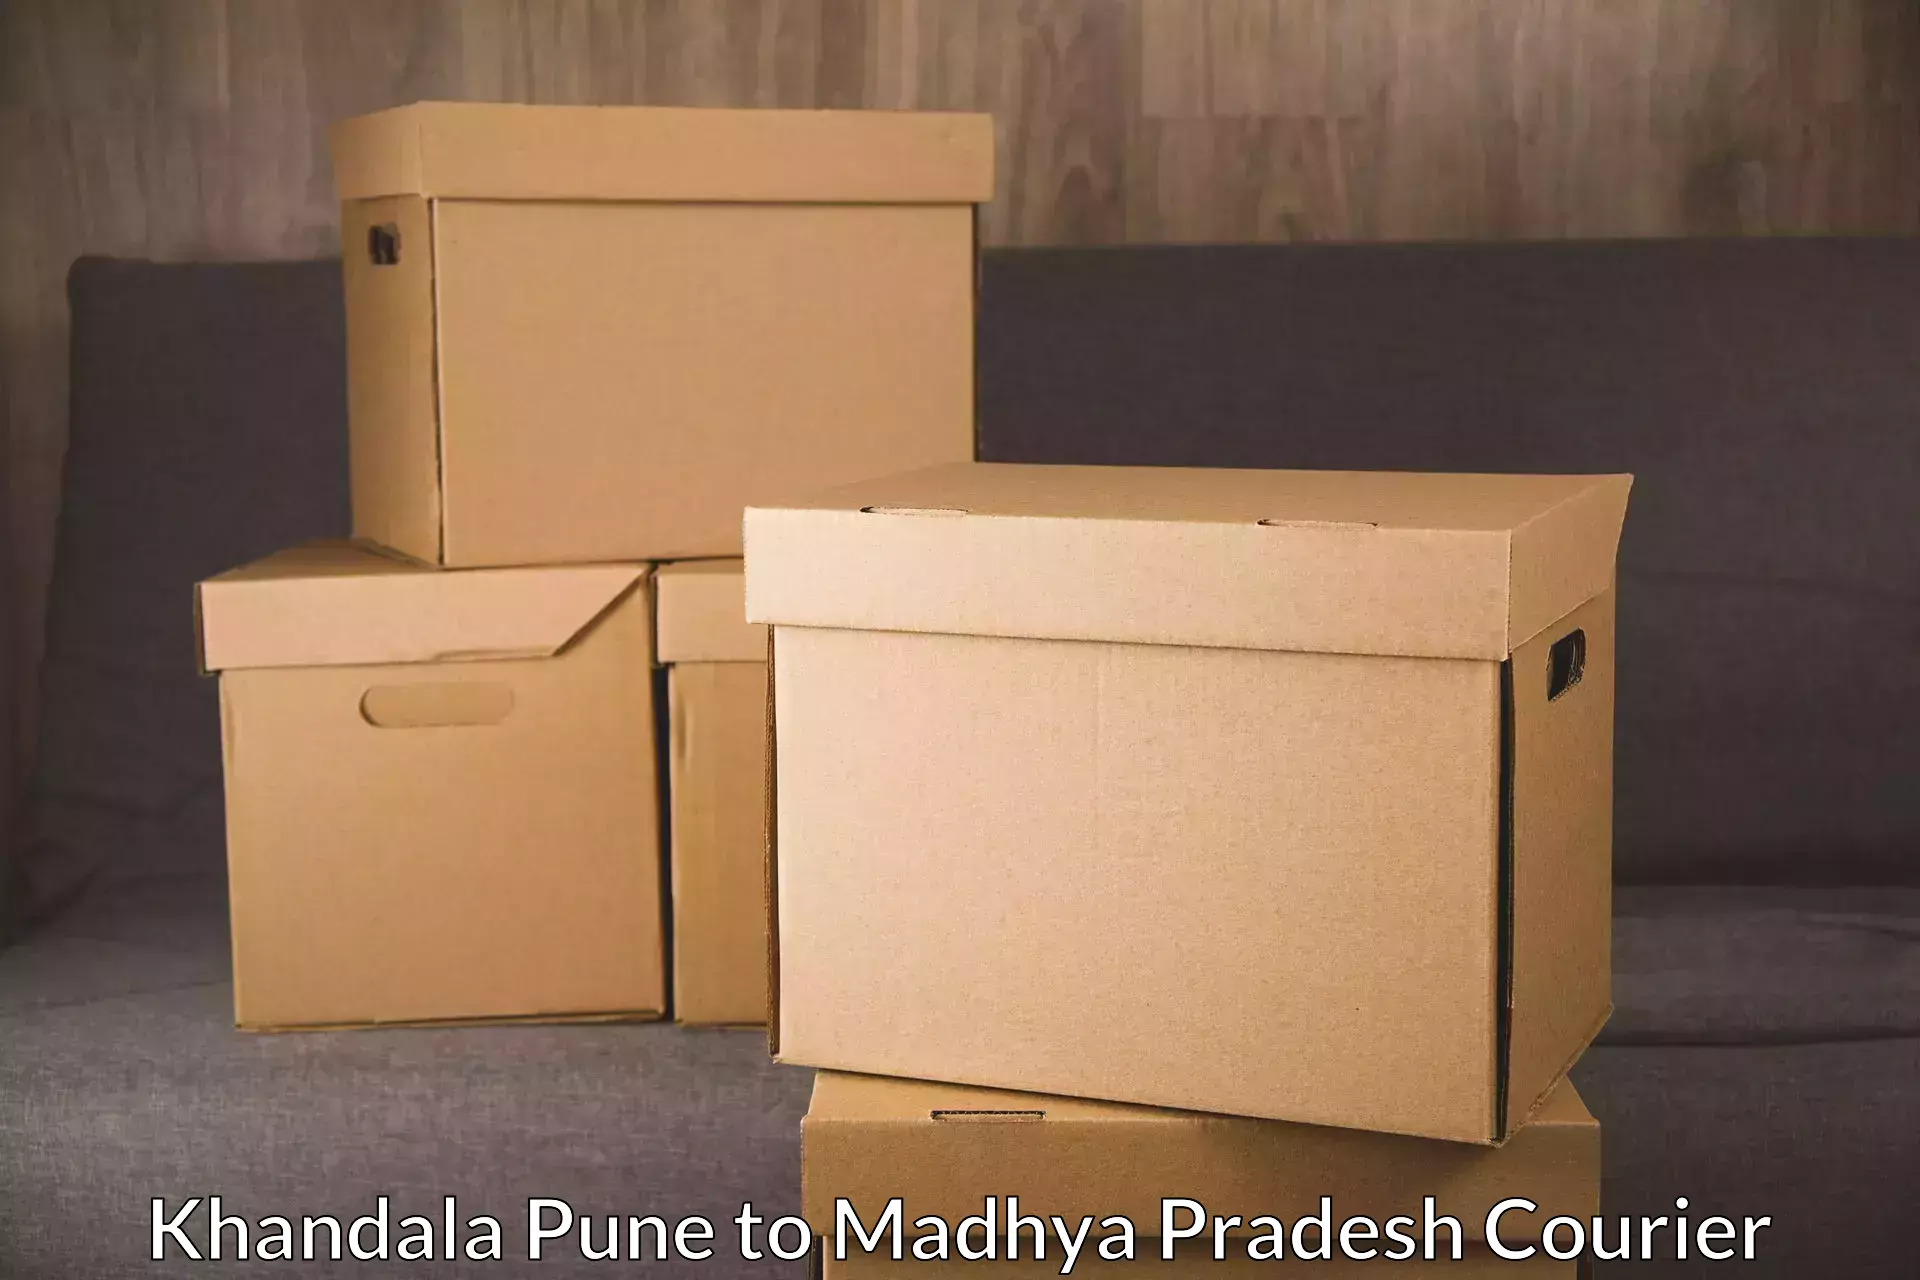 Multi-national courier services Khandala Pune to Khirkiya